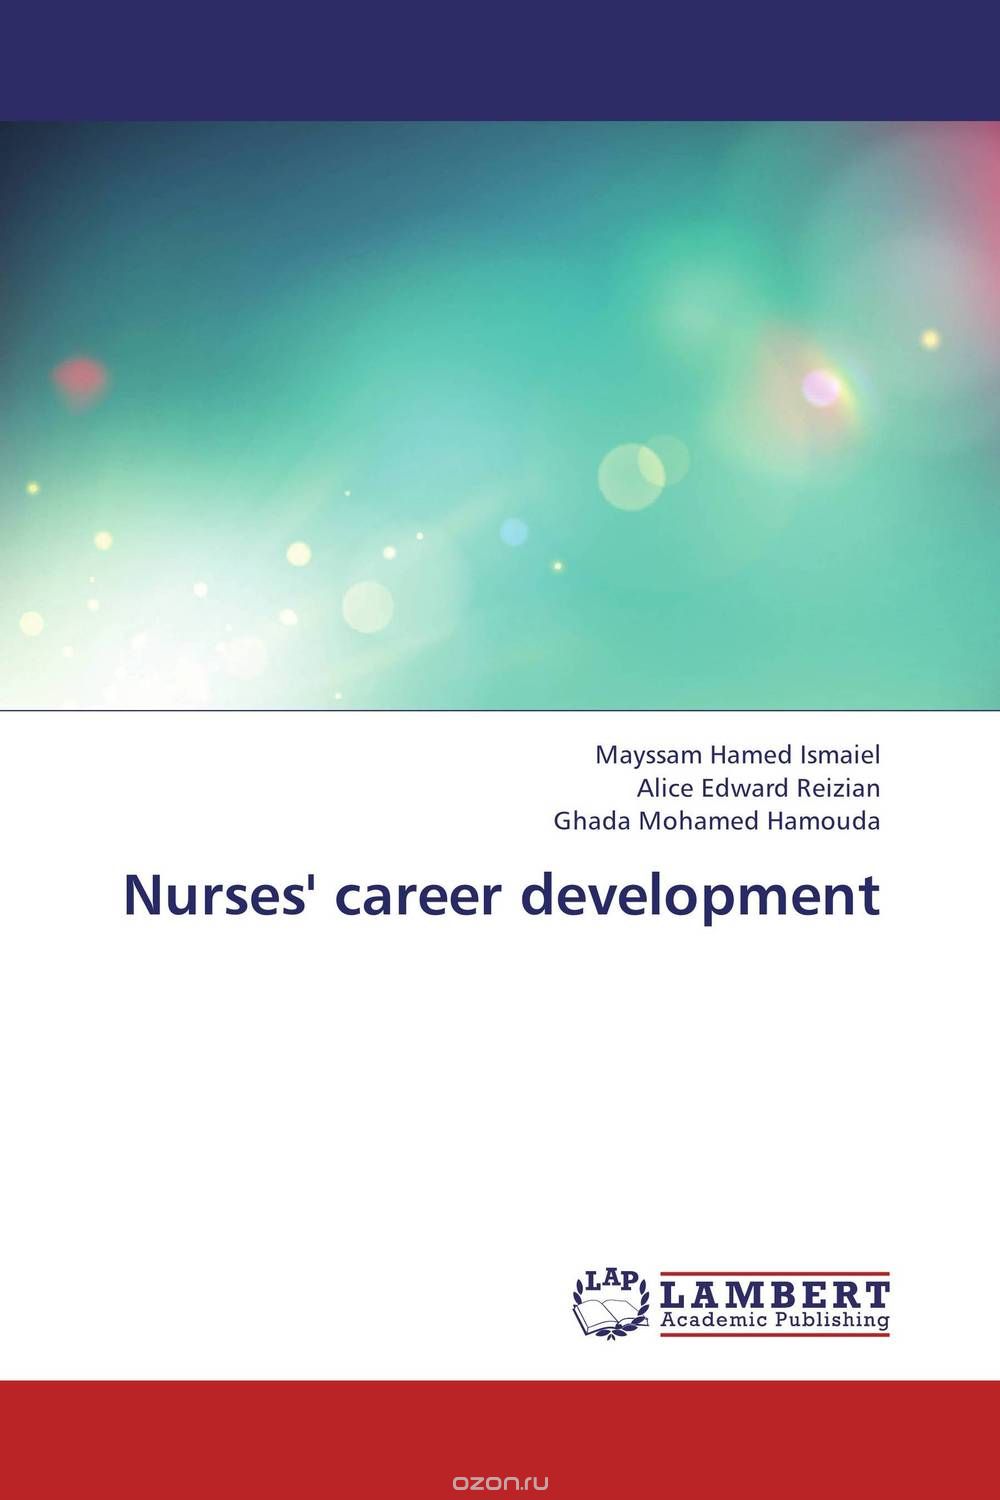 Скачать книгу "Nurses' career development"